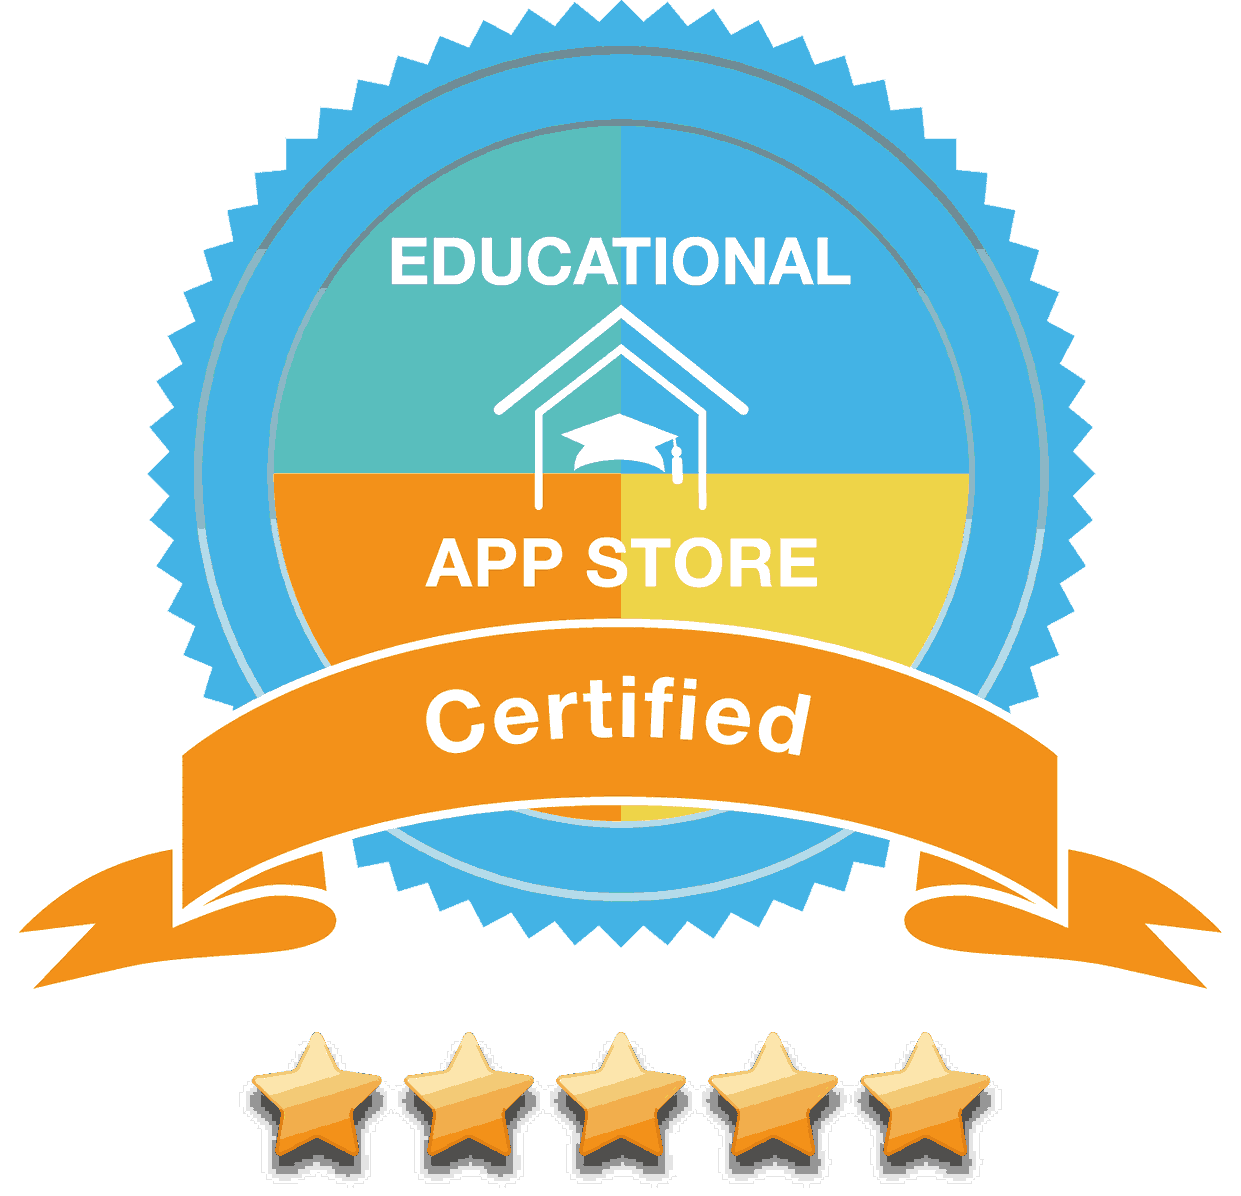 Educational App Store Certificate